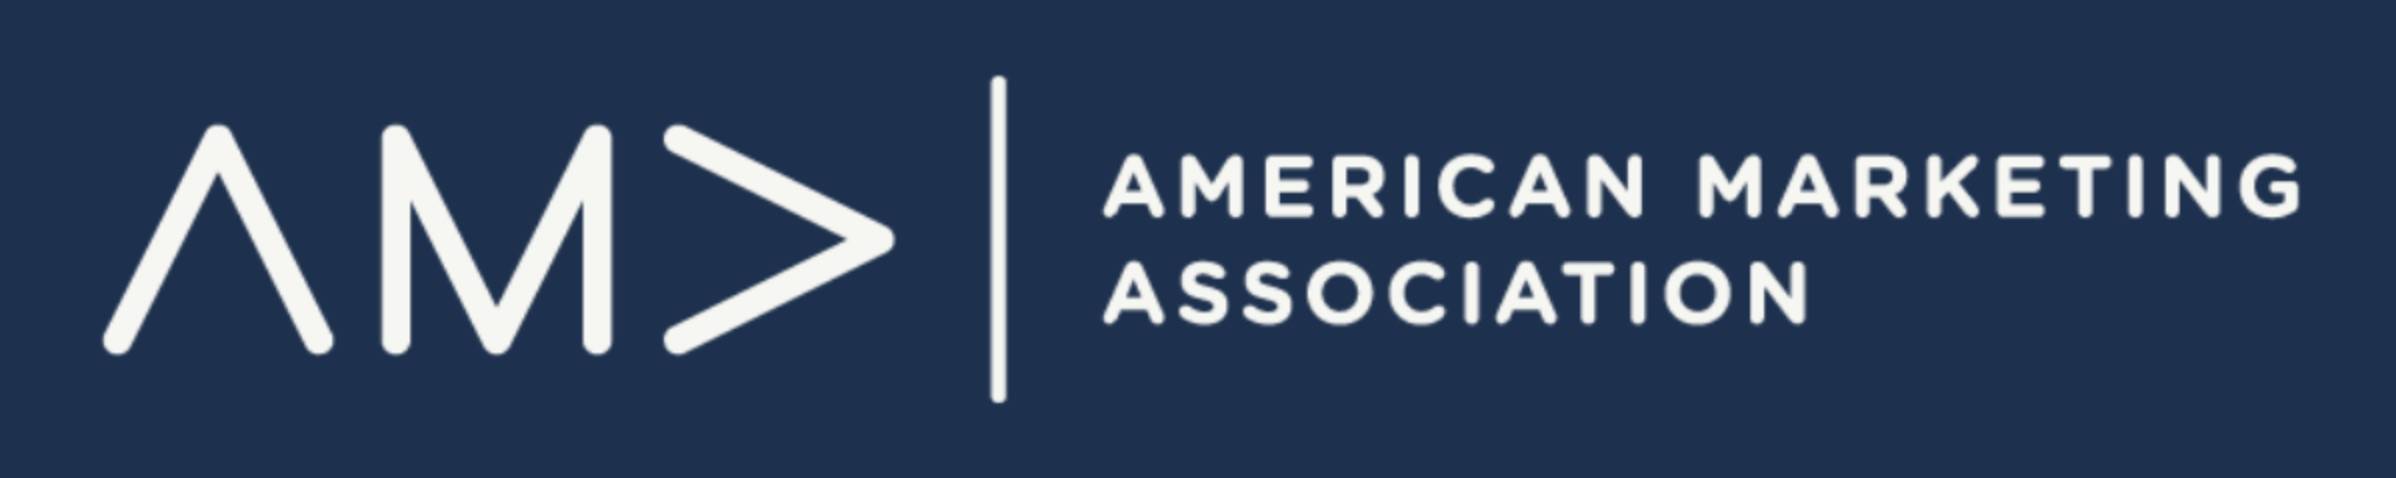 American Marketing Association (AMA) Logo